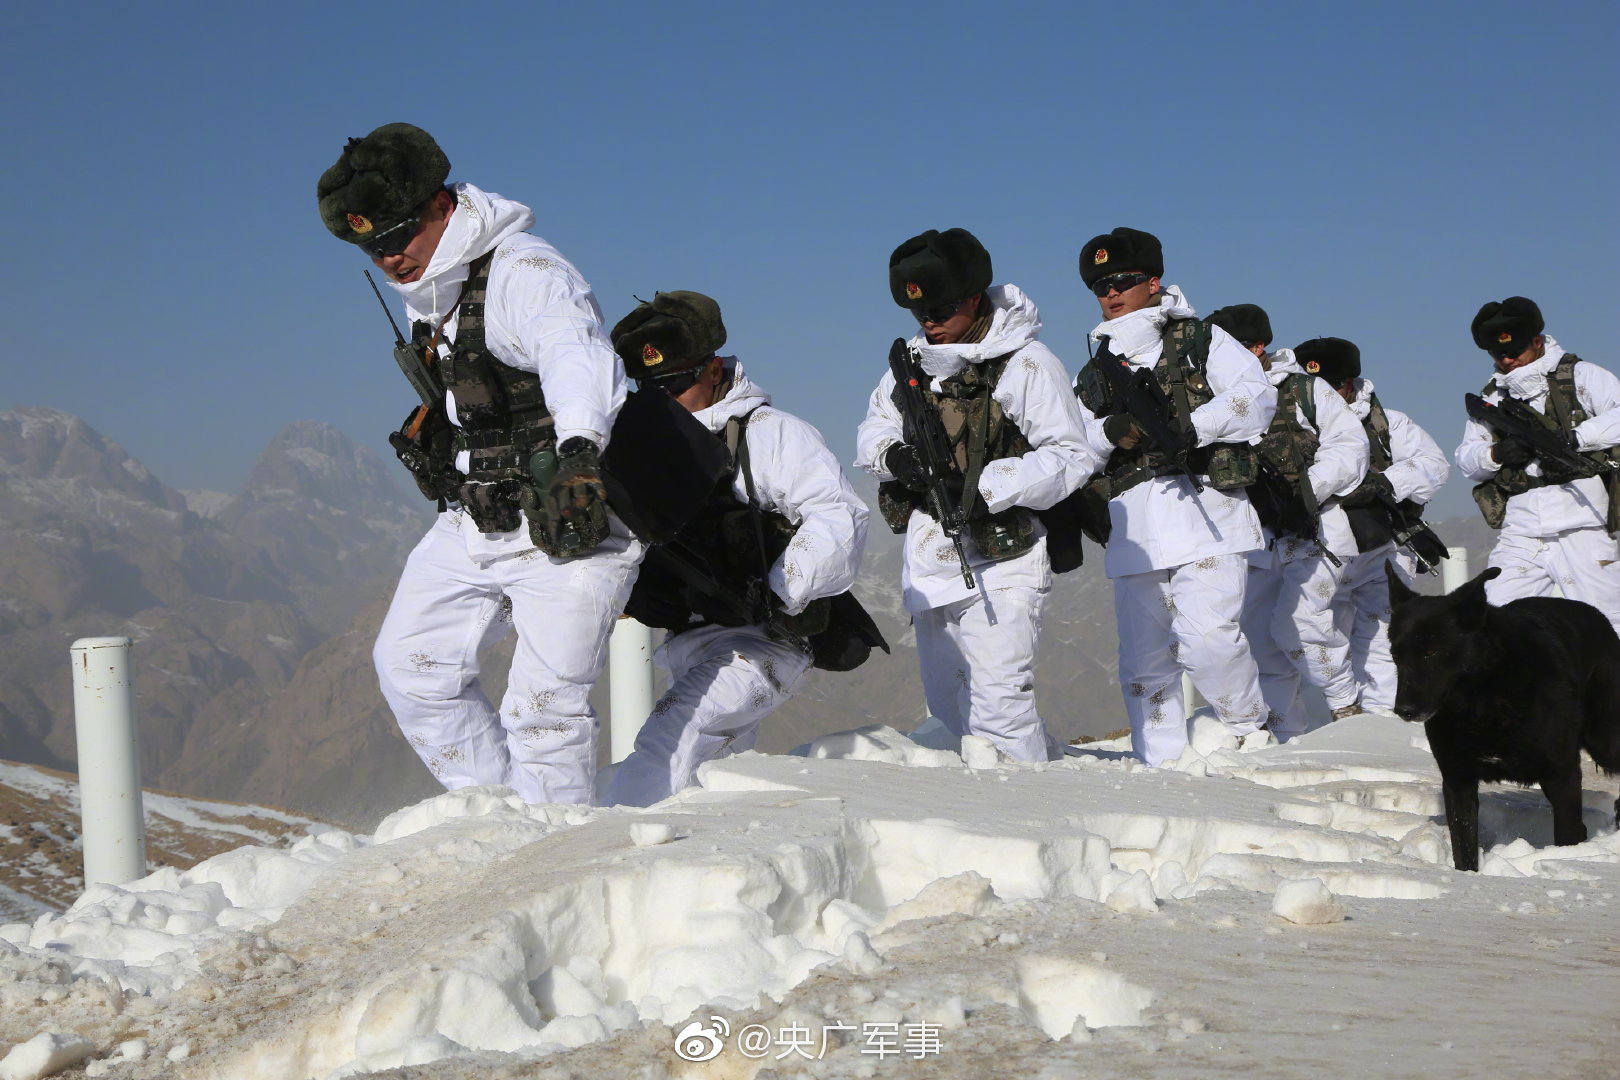 翻雪山过达坂,这就是新疆边防官兵的巡逻路